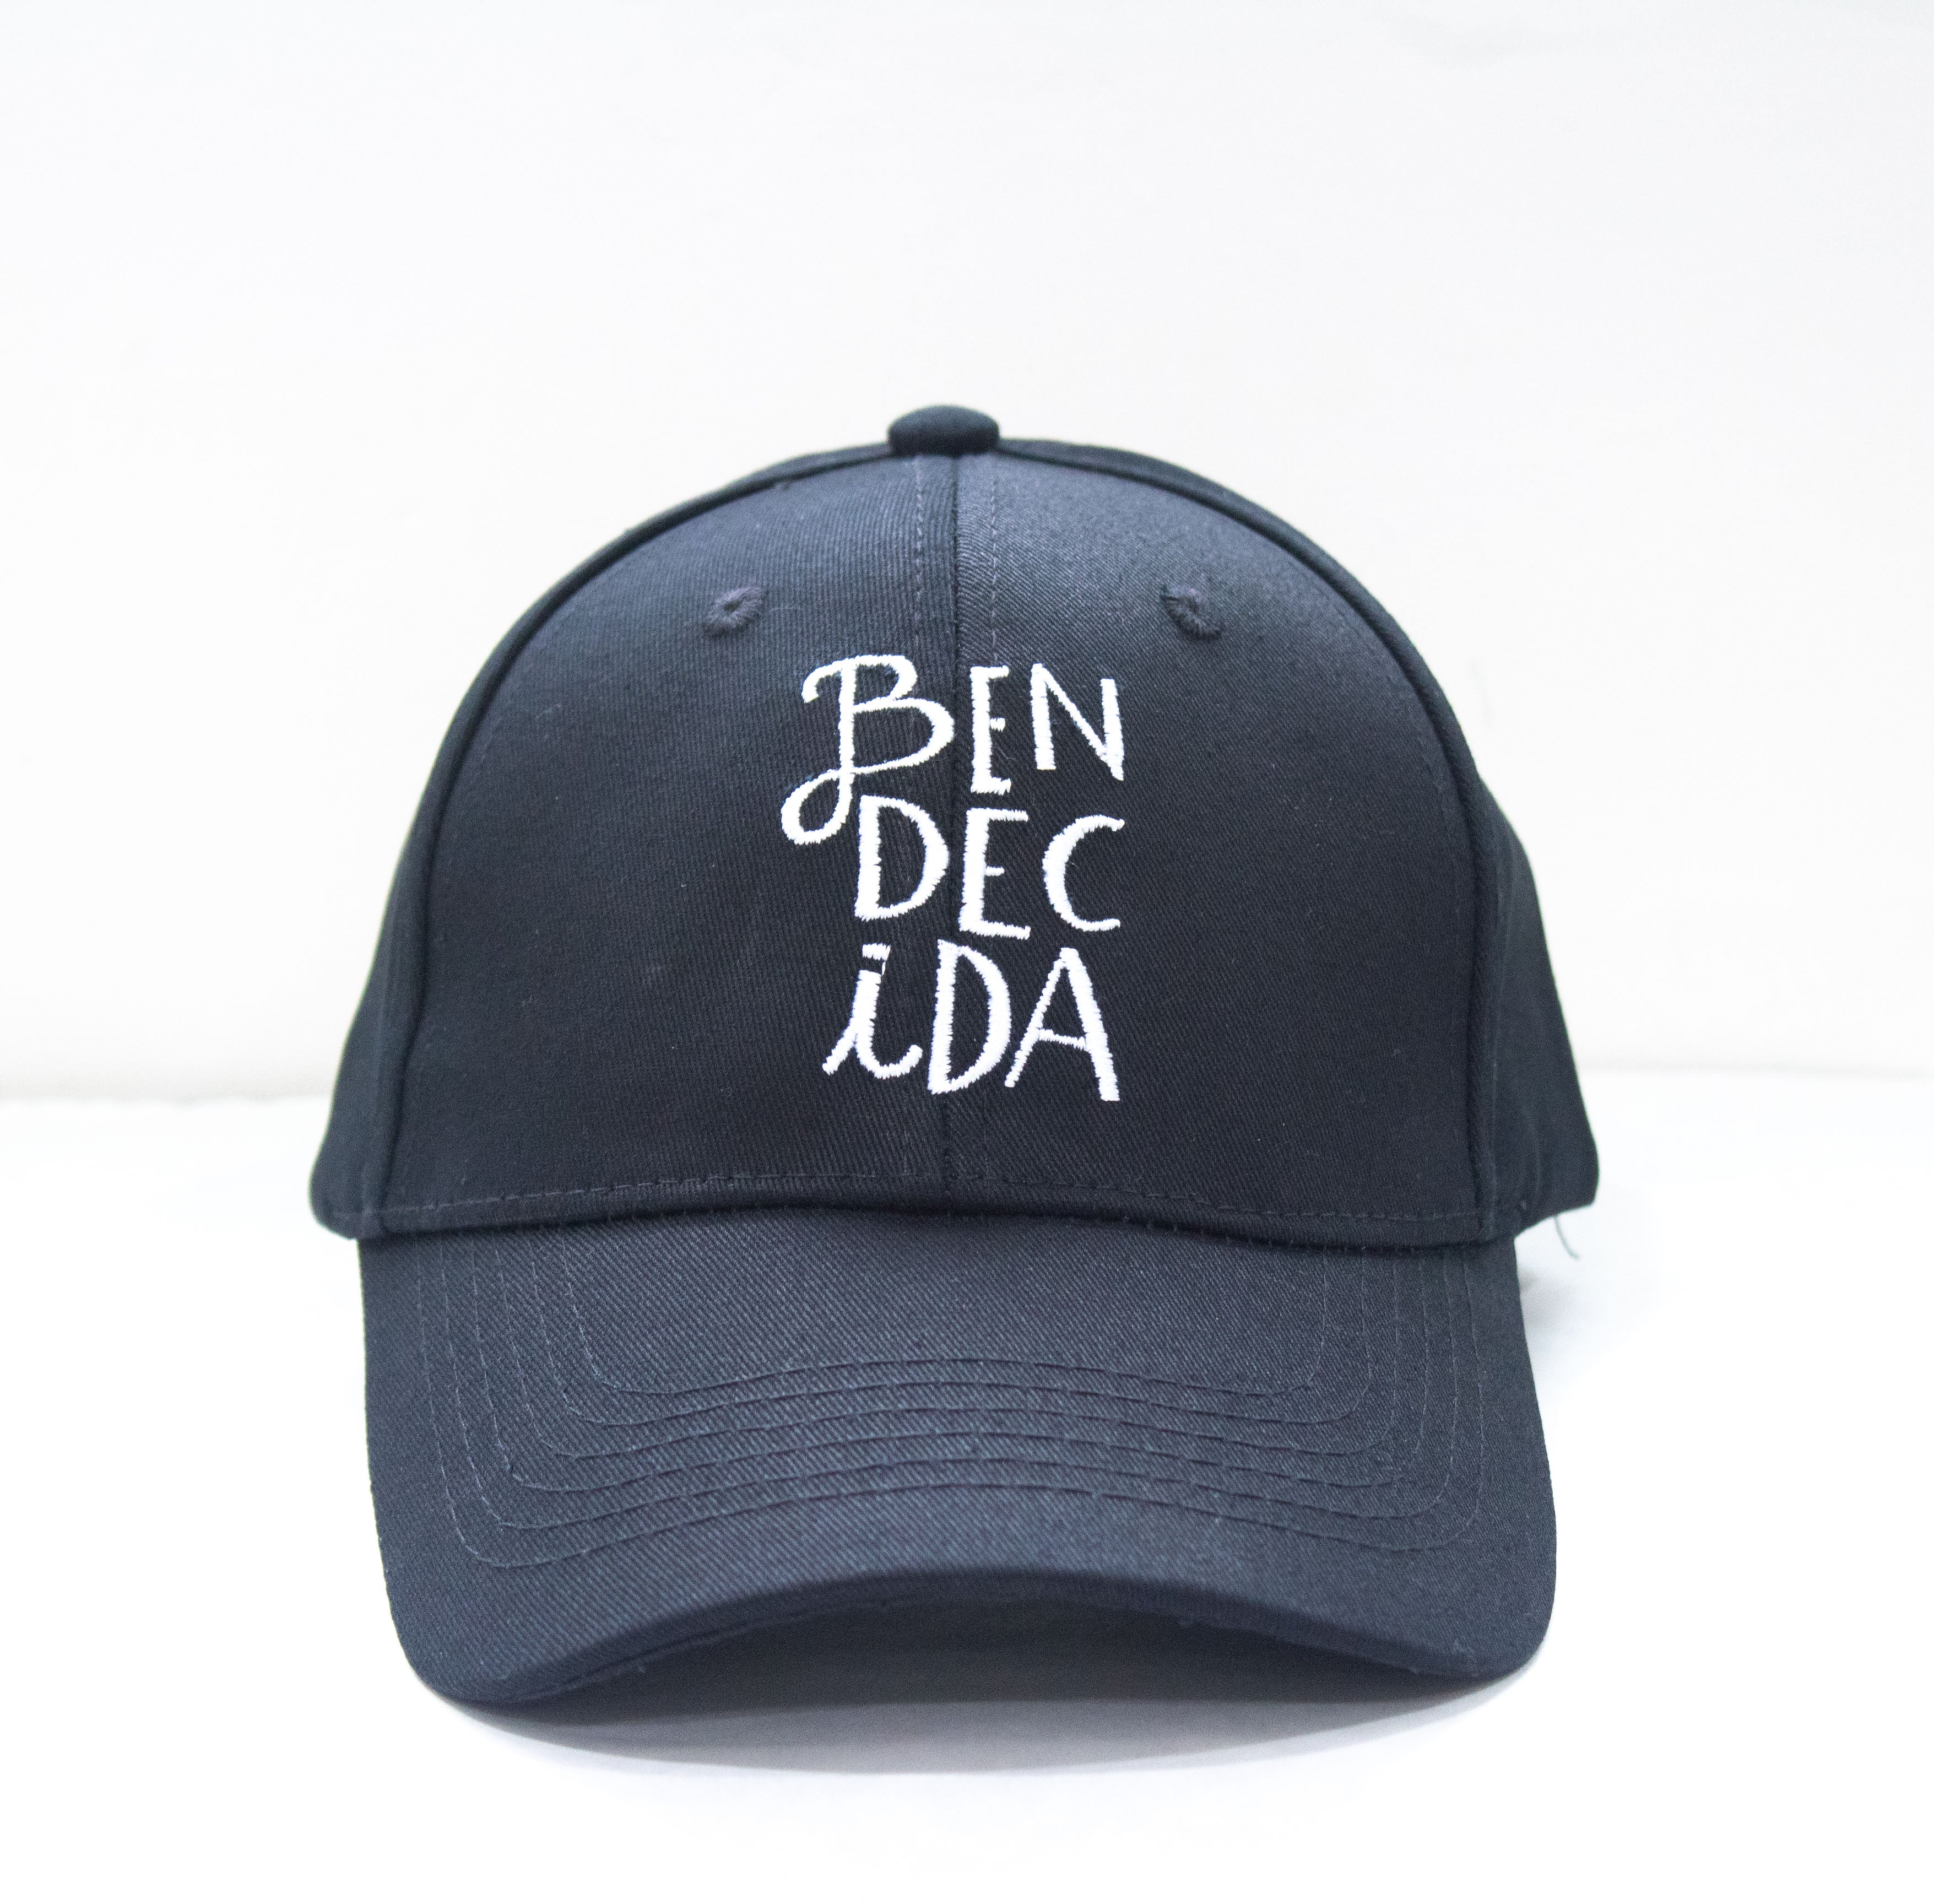 Gorra estilo baseball cap con mensaje de Bendecida